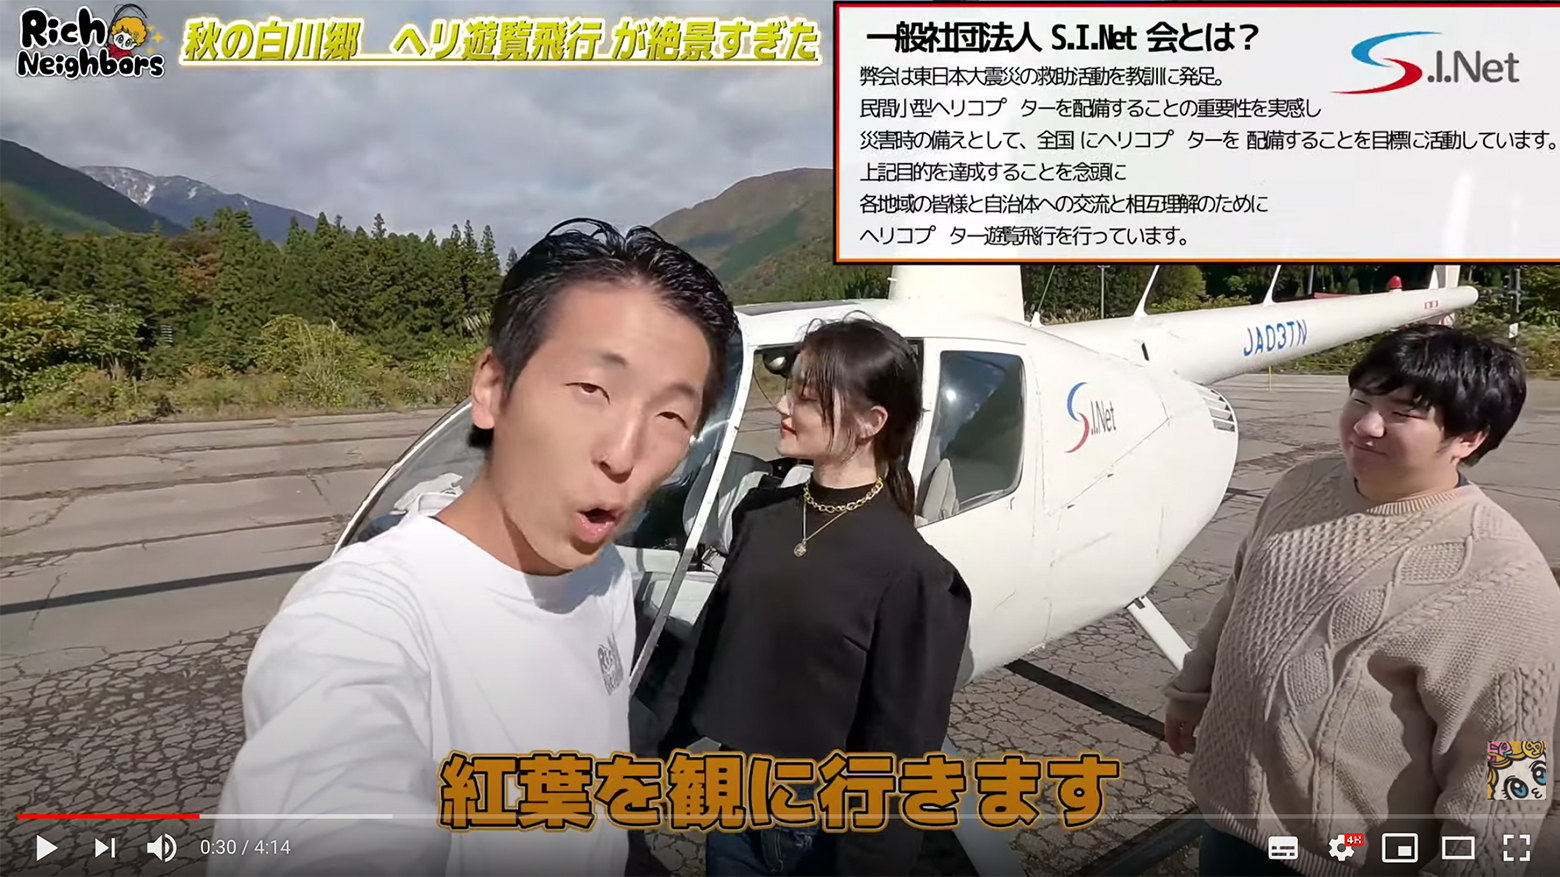 白川郷遊覧時のヘリコプターがYouTube動画に登場しました